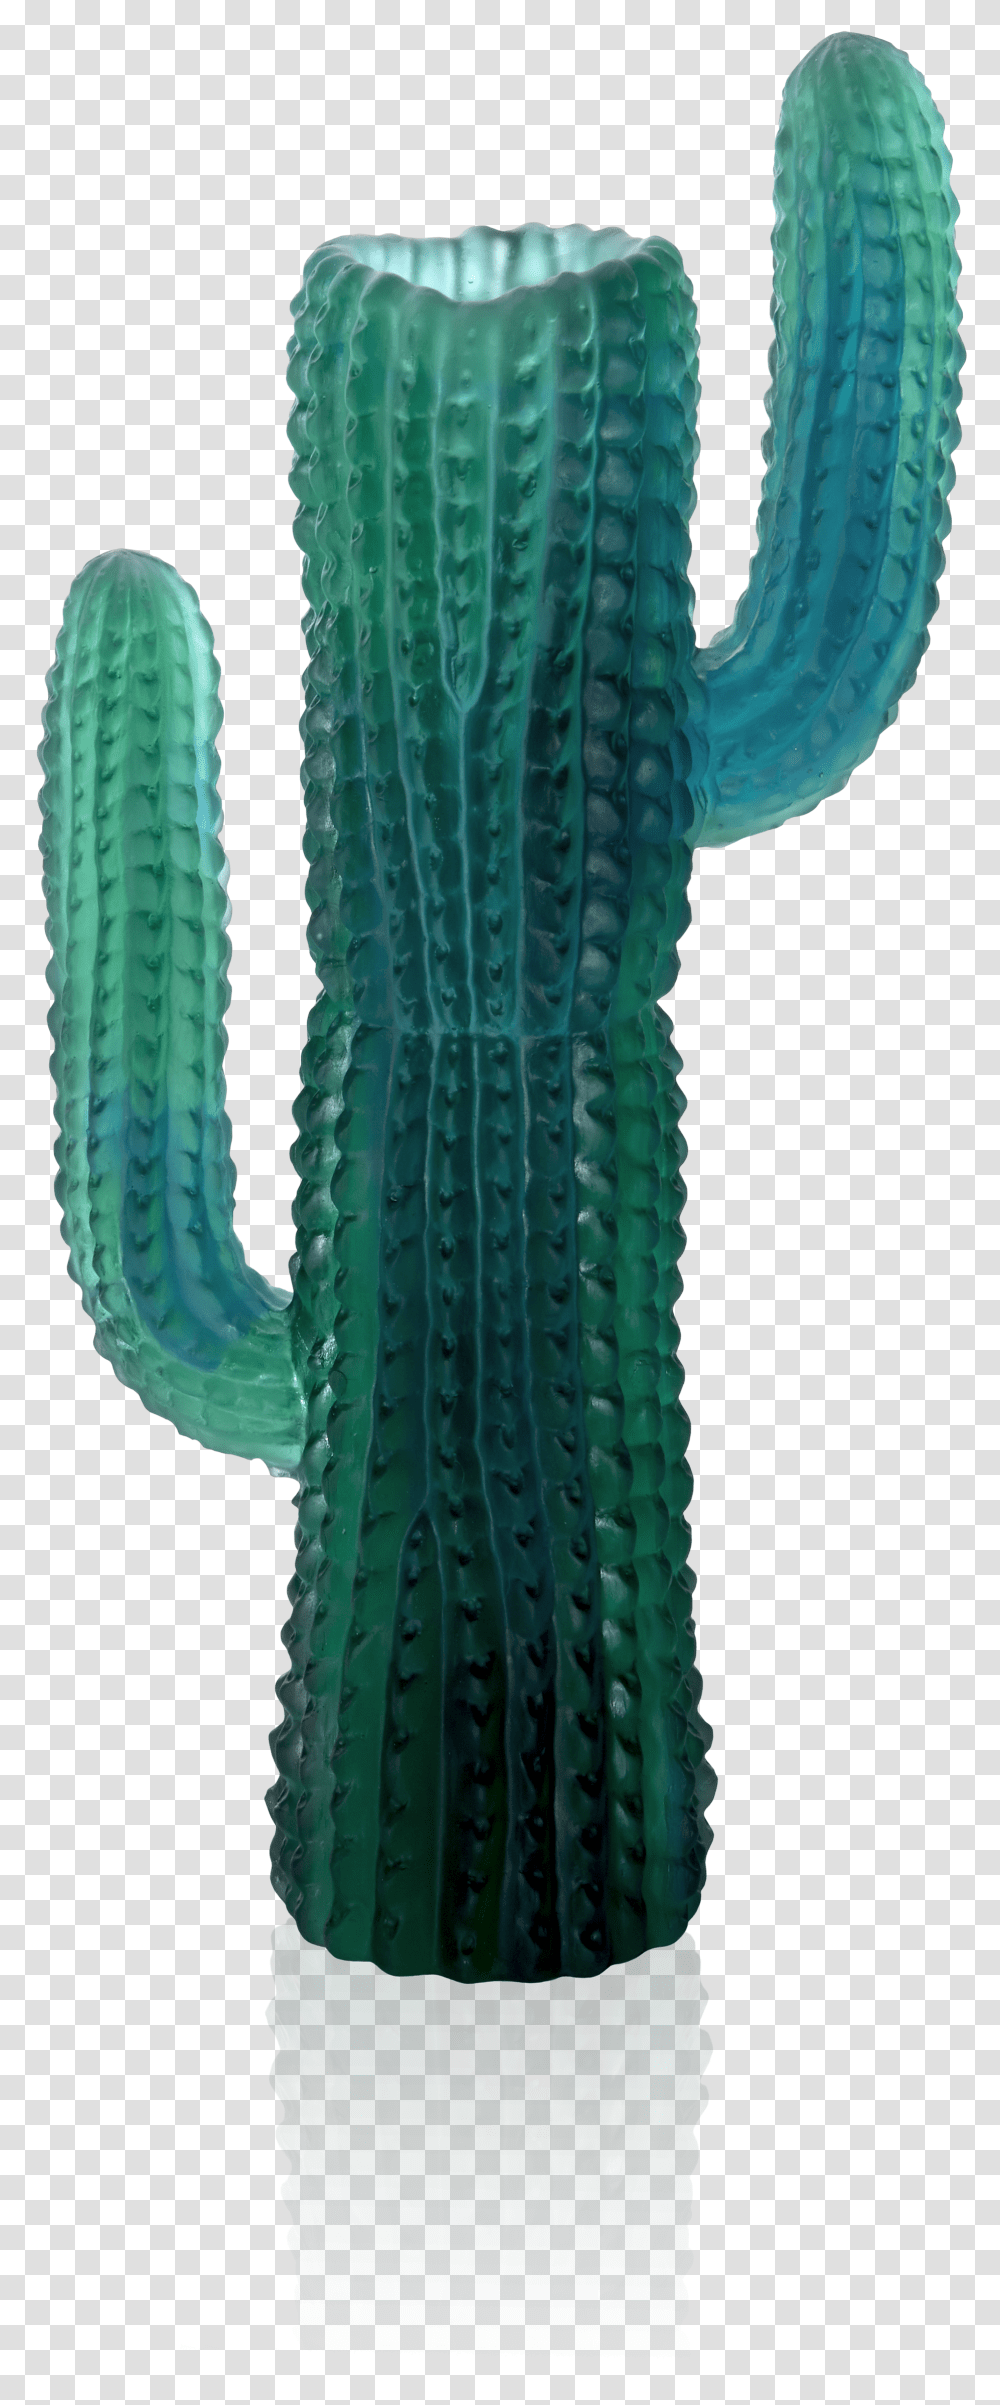 Hedgehog Cactus Transparent Png